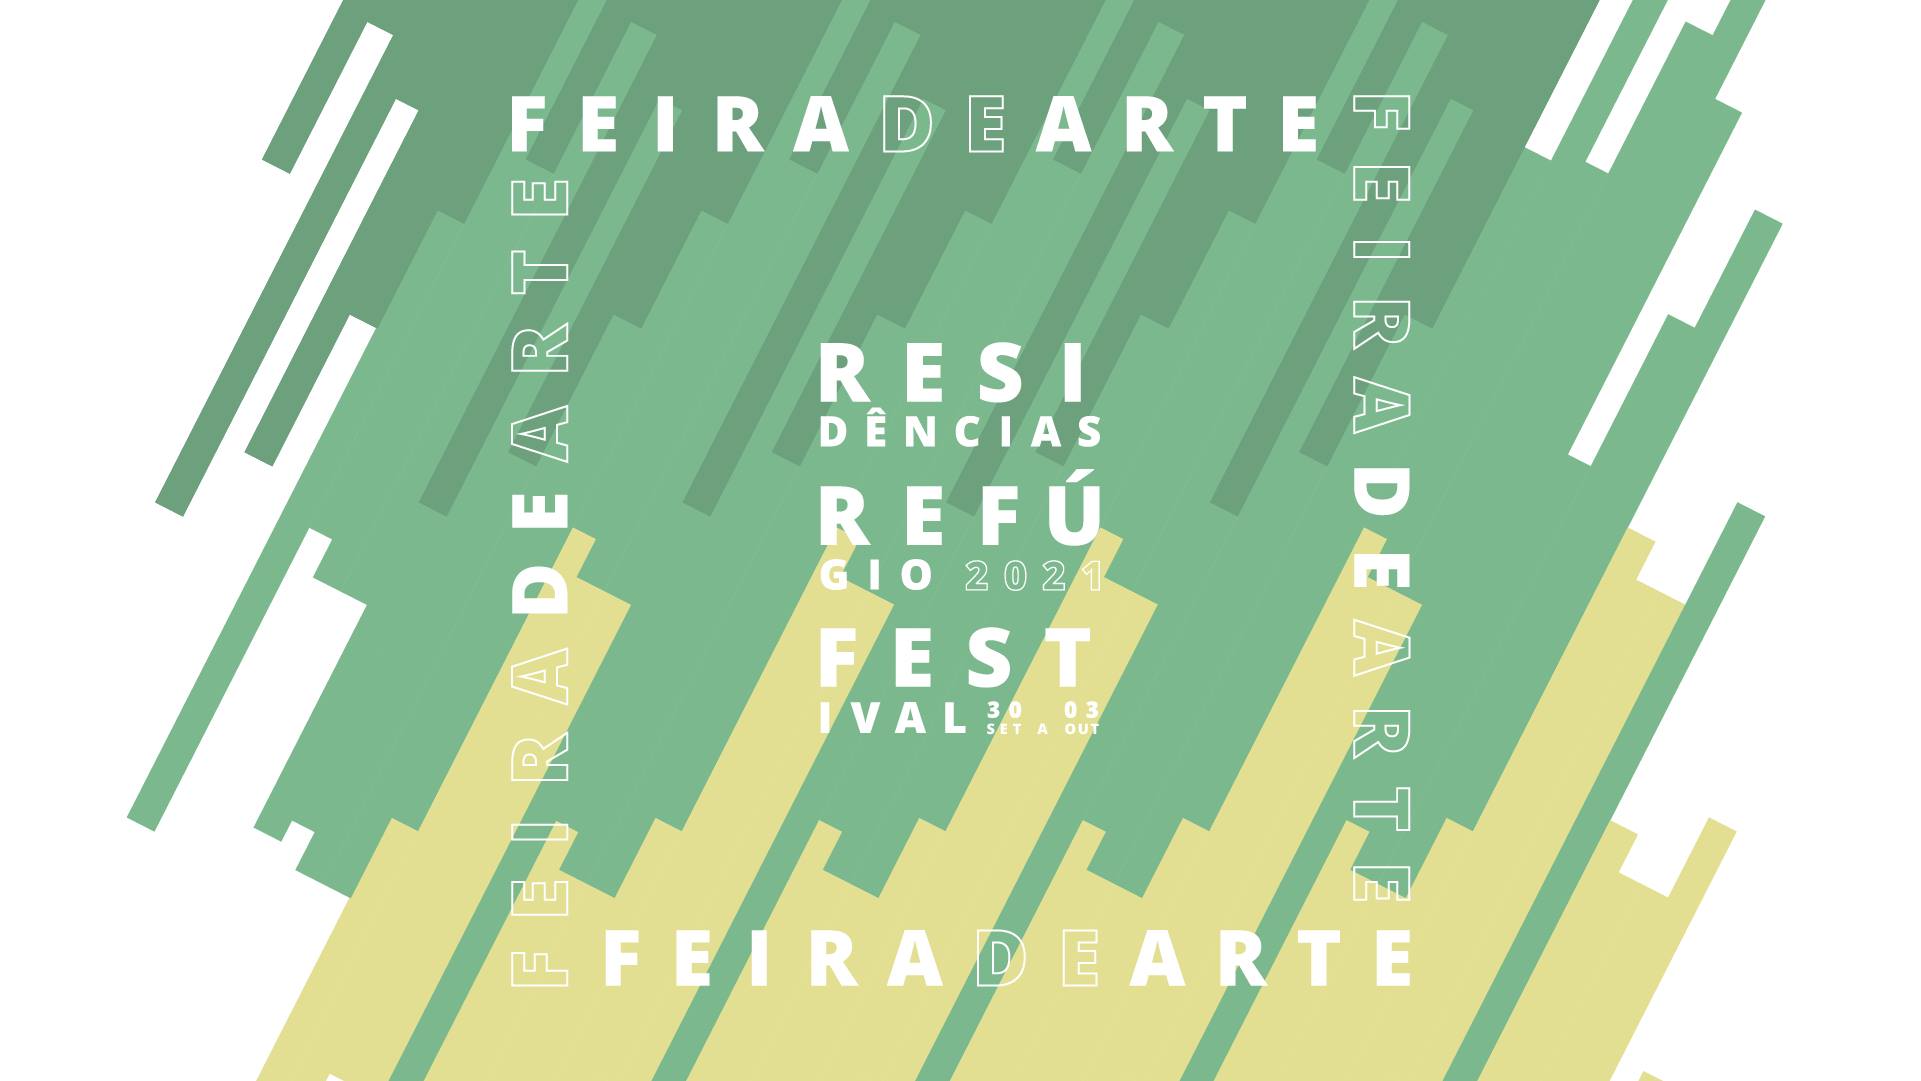 FEIRA DE ARTE :: Residências Refúgio Festival